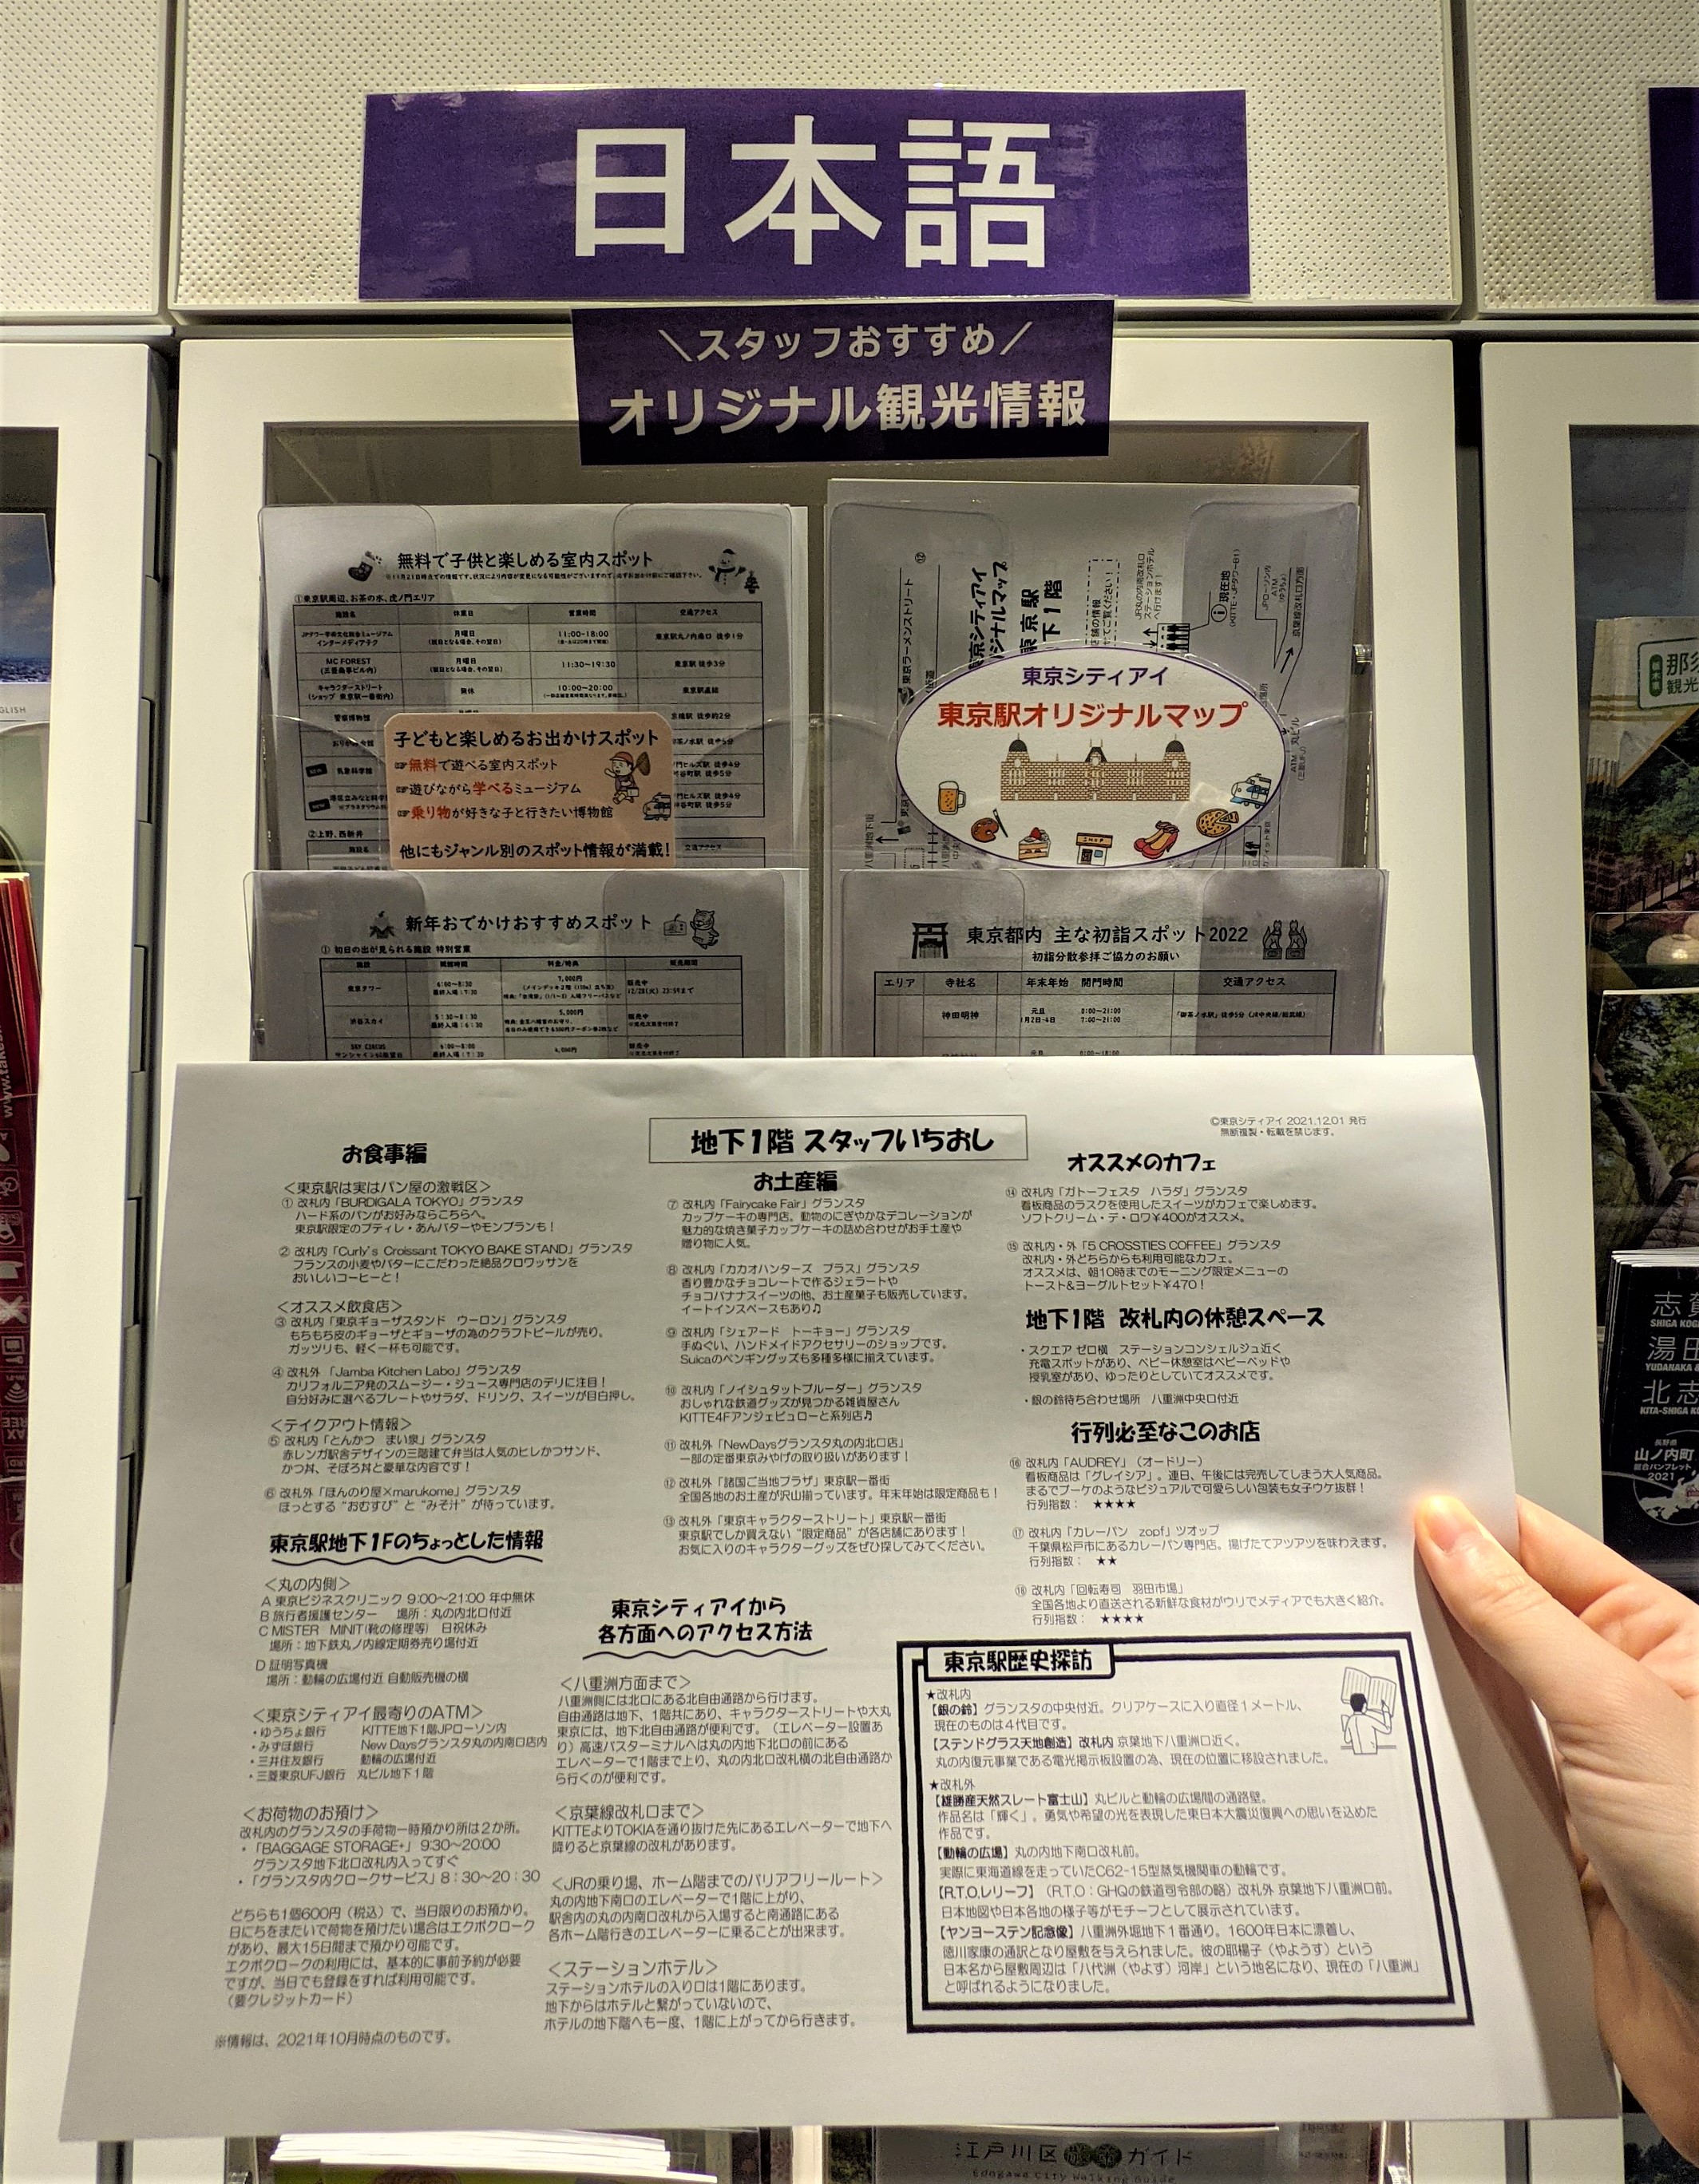 東京シティアイ Tokyo City I ついに完成 東京シティアイオリジナルマップ 東京駅構内編 の配架を開始しました 東京駅で働くスタッフが情報を集めた資料です お客様から問い合わせの多いお土産 や おすすめのテイクアウト